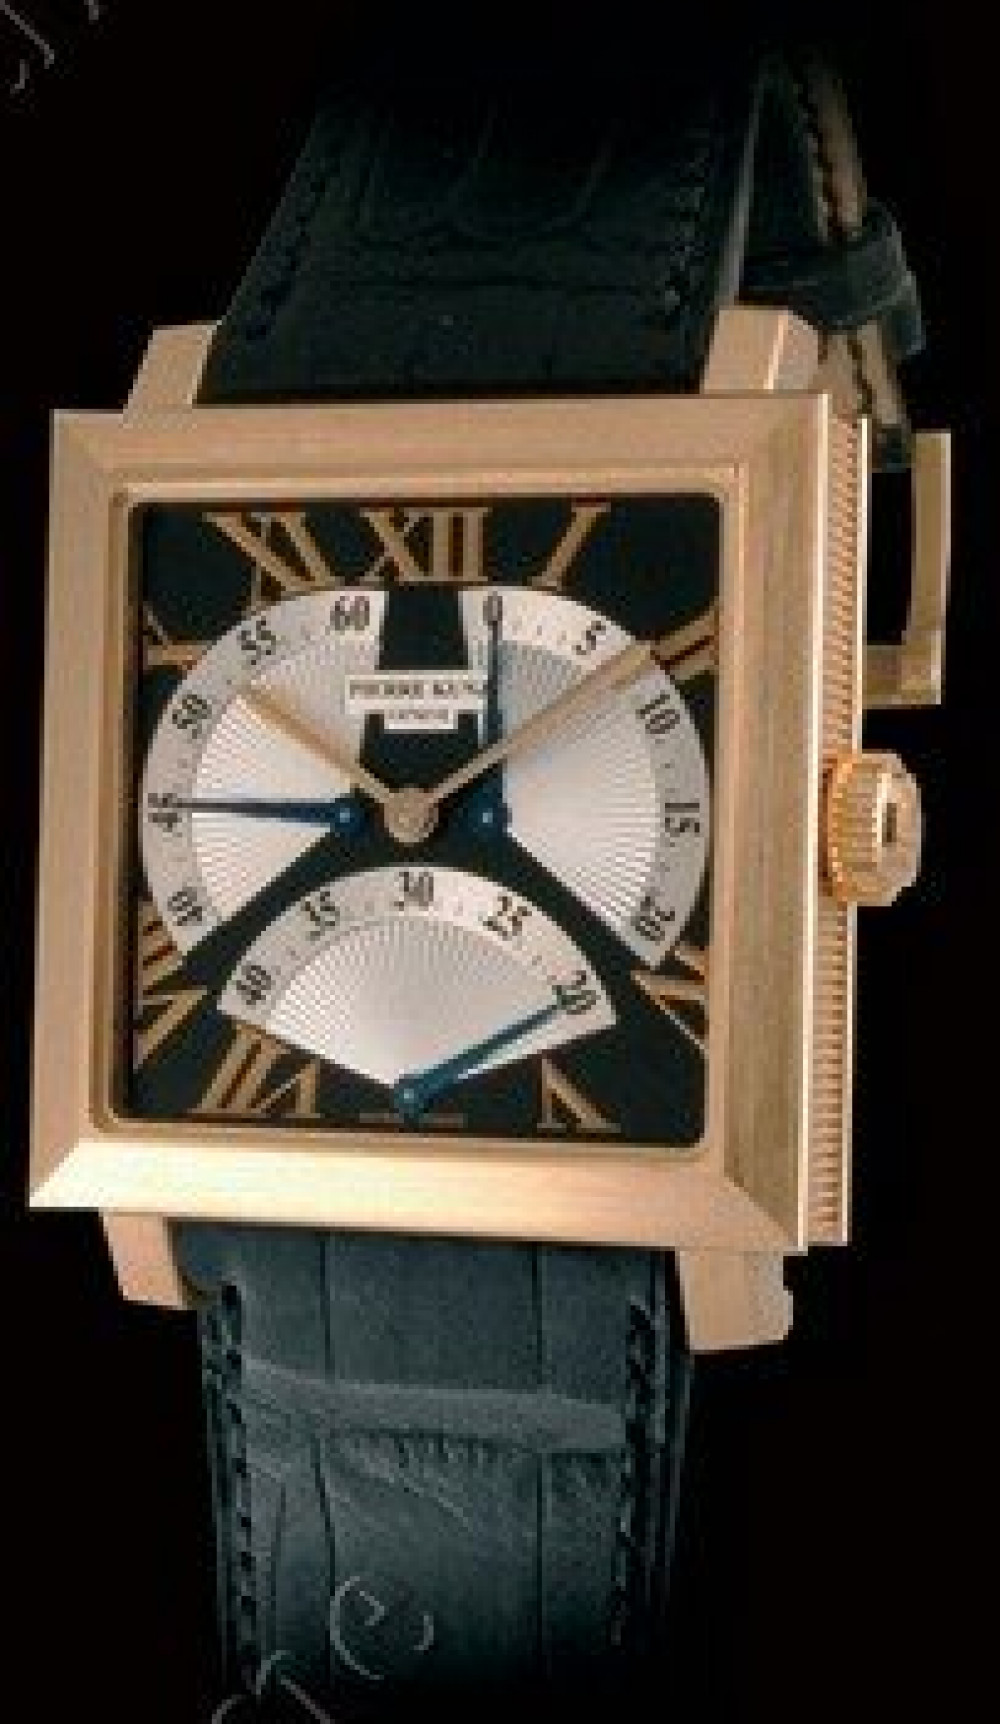 Zegarek firmy Pierre Kunz, model B002 STR